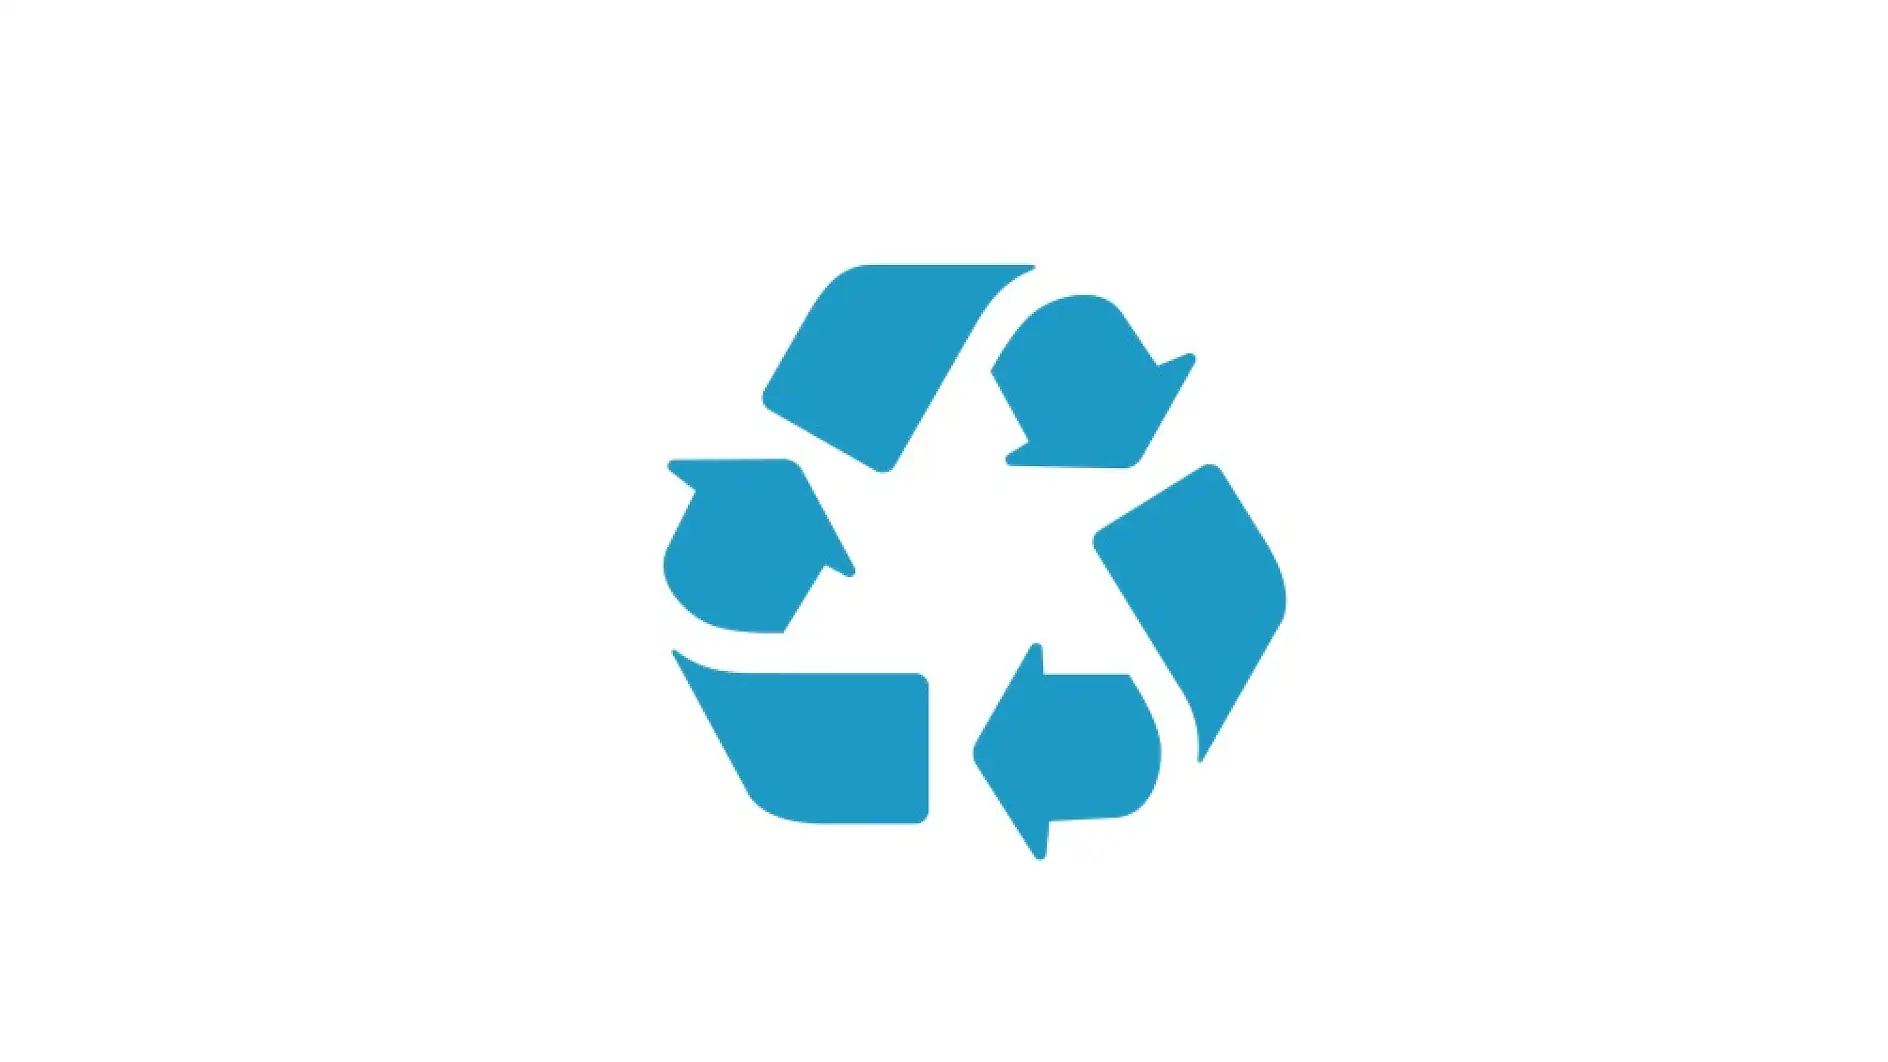 Cinta de embalaje respetuosa con el reciclaje (certificada)